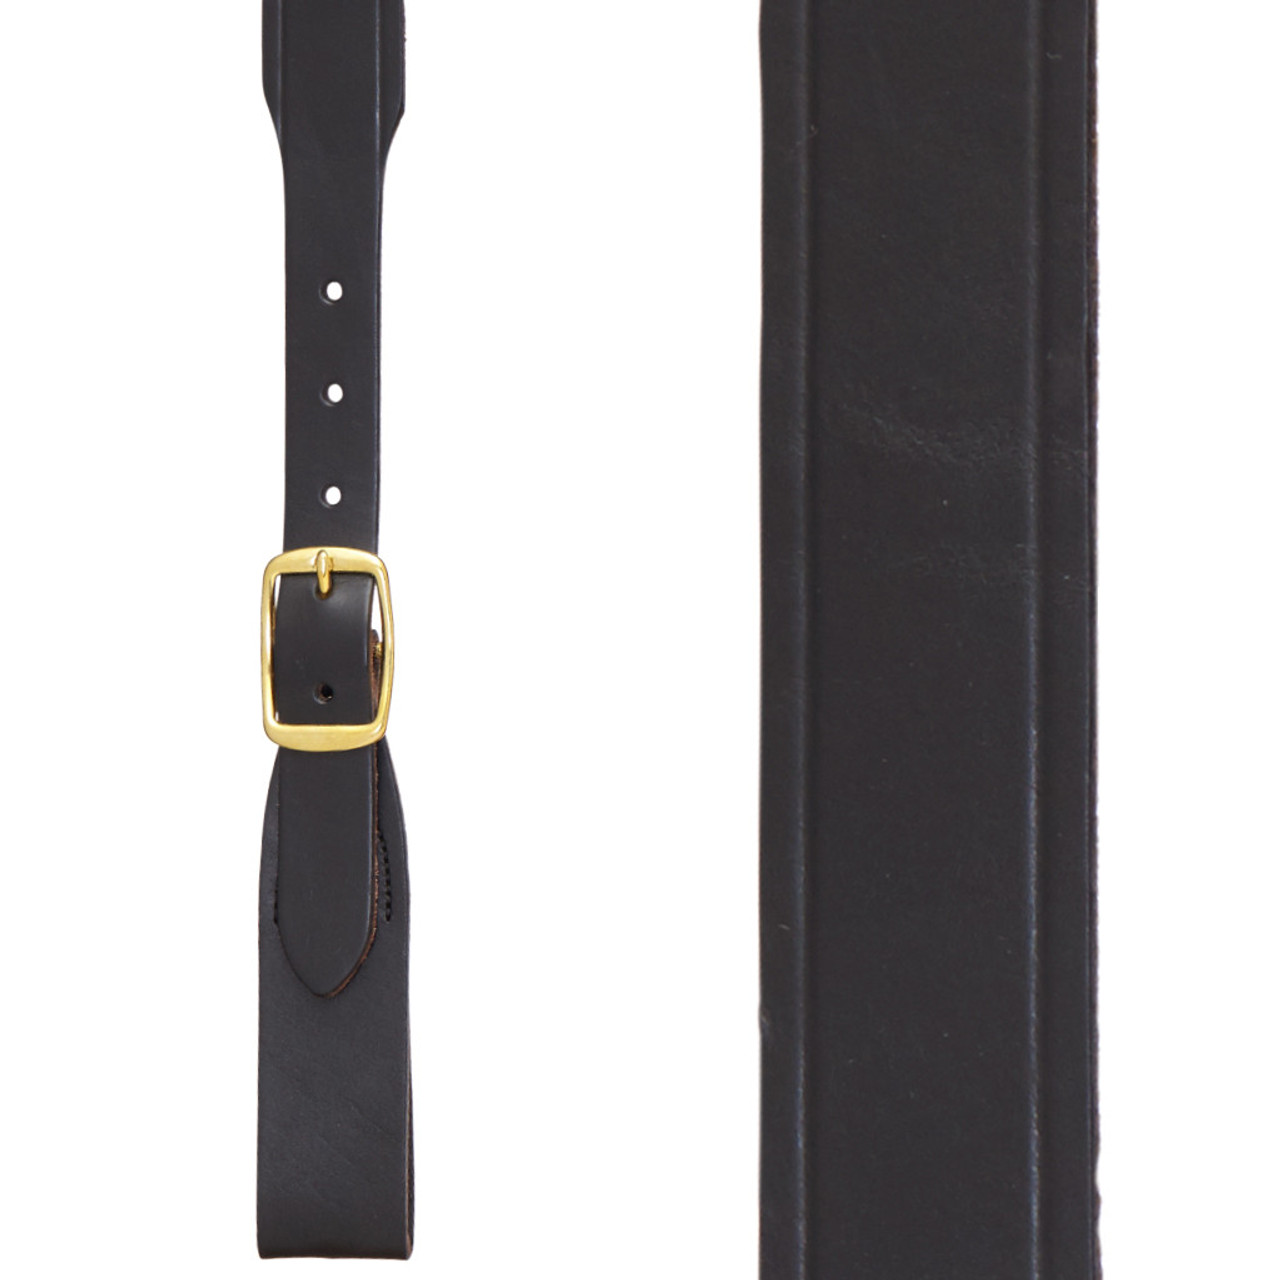 BLACK Handcrafted Western Leather Suspenders - Plain - Belt Loop